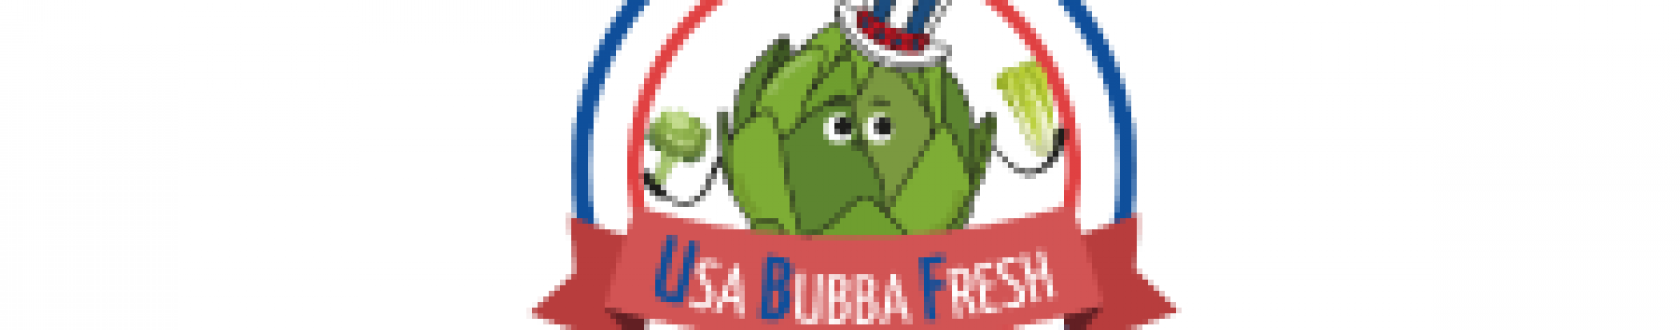 USA-Bubba-Fresh